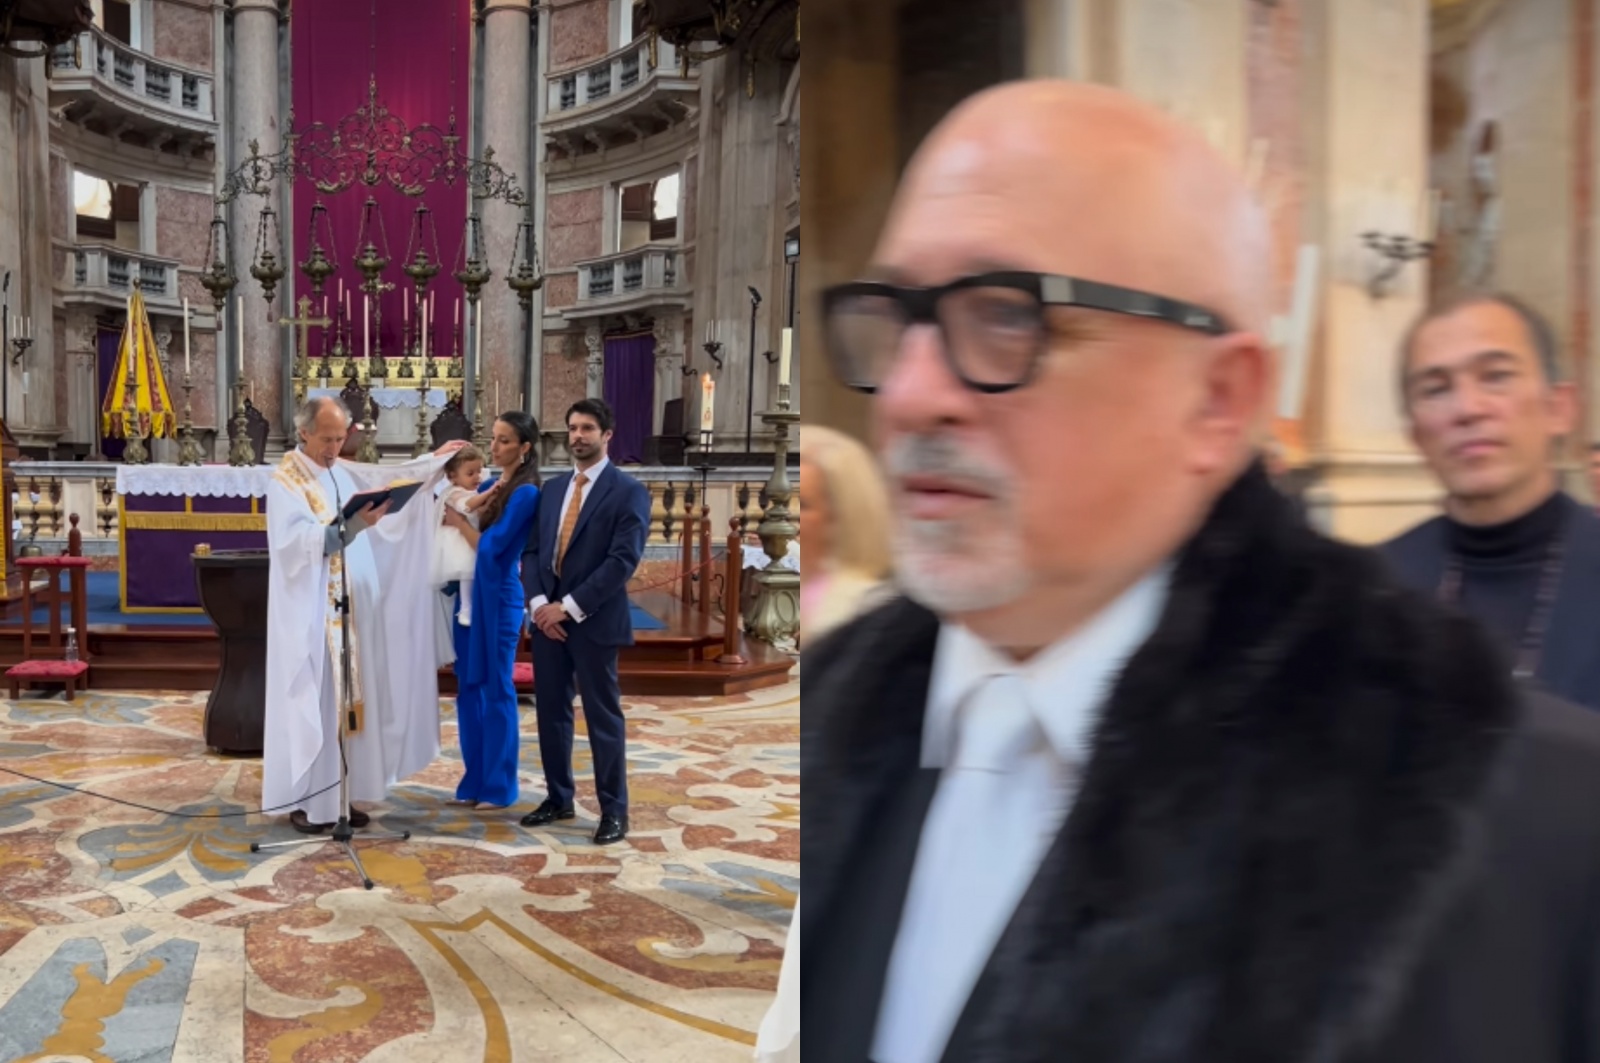 Vídeo do batizado da neta de José Castelo Branco causa confusão: "Olha o Goucha!"